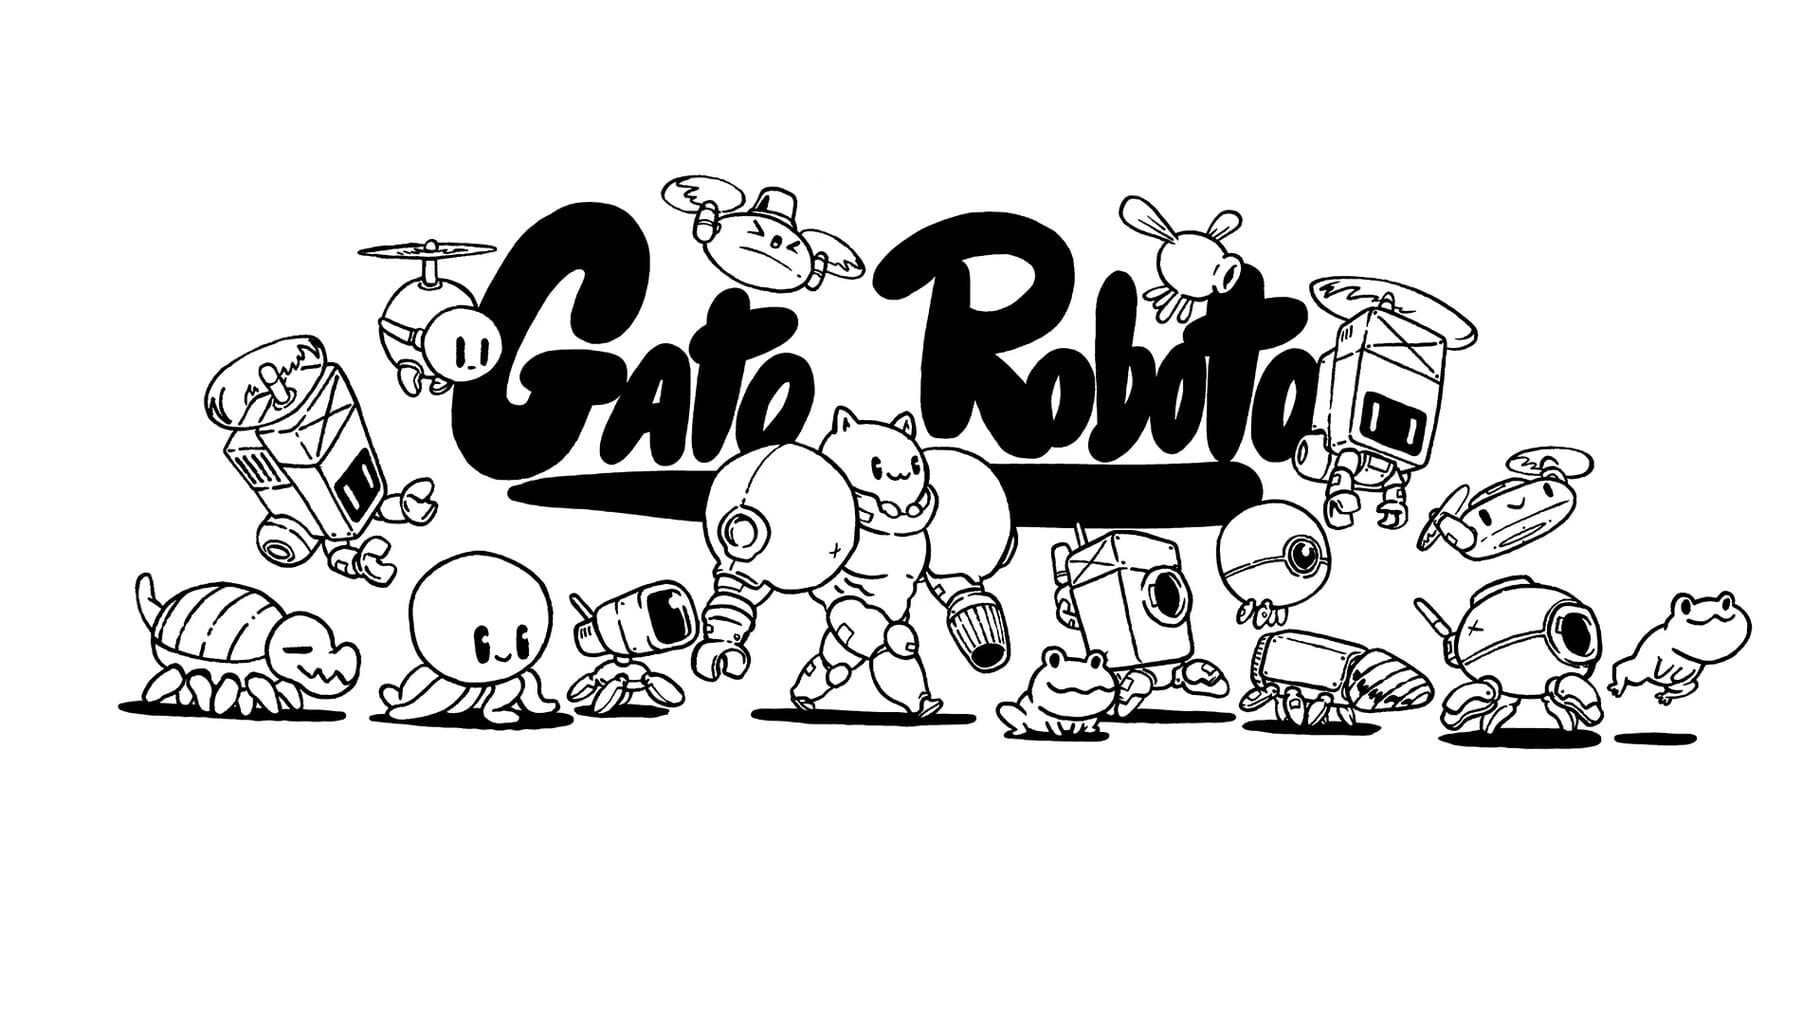 Gato Roboto artwork